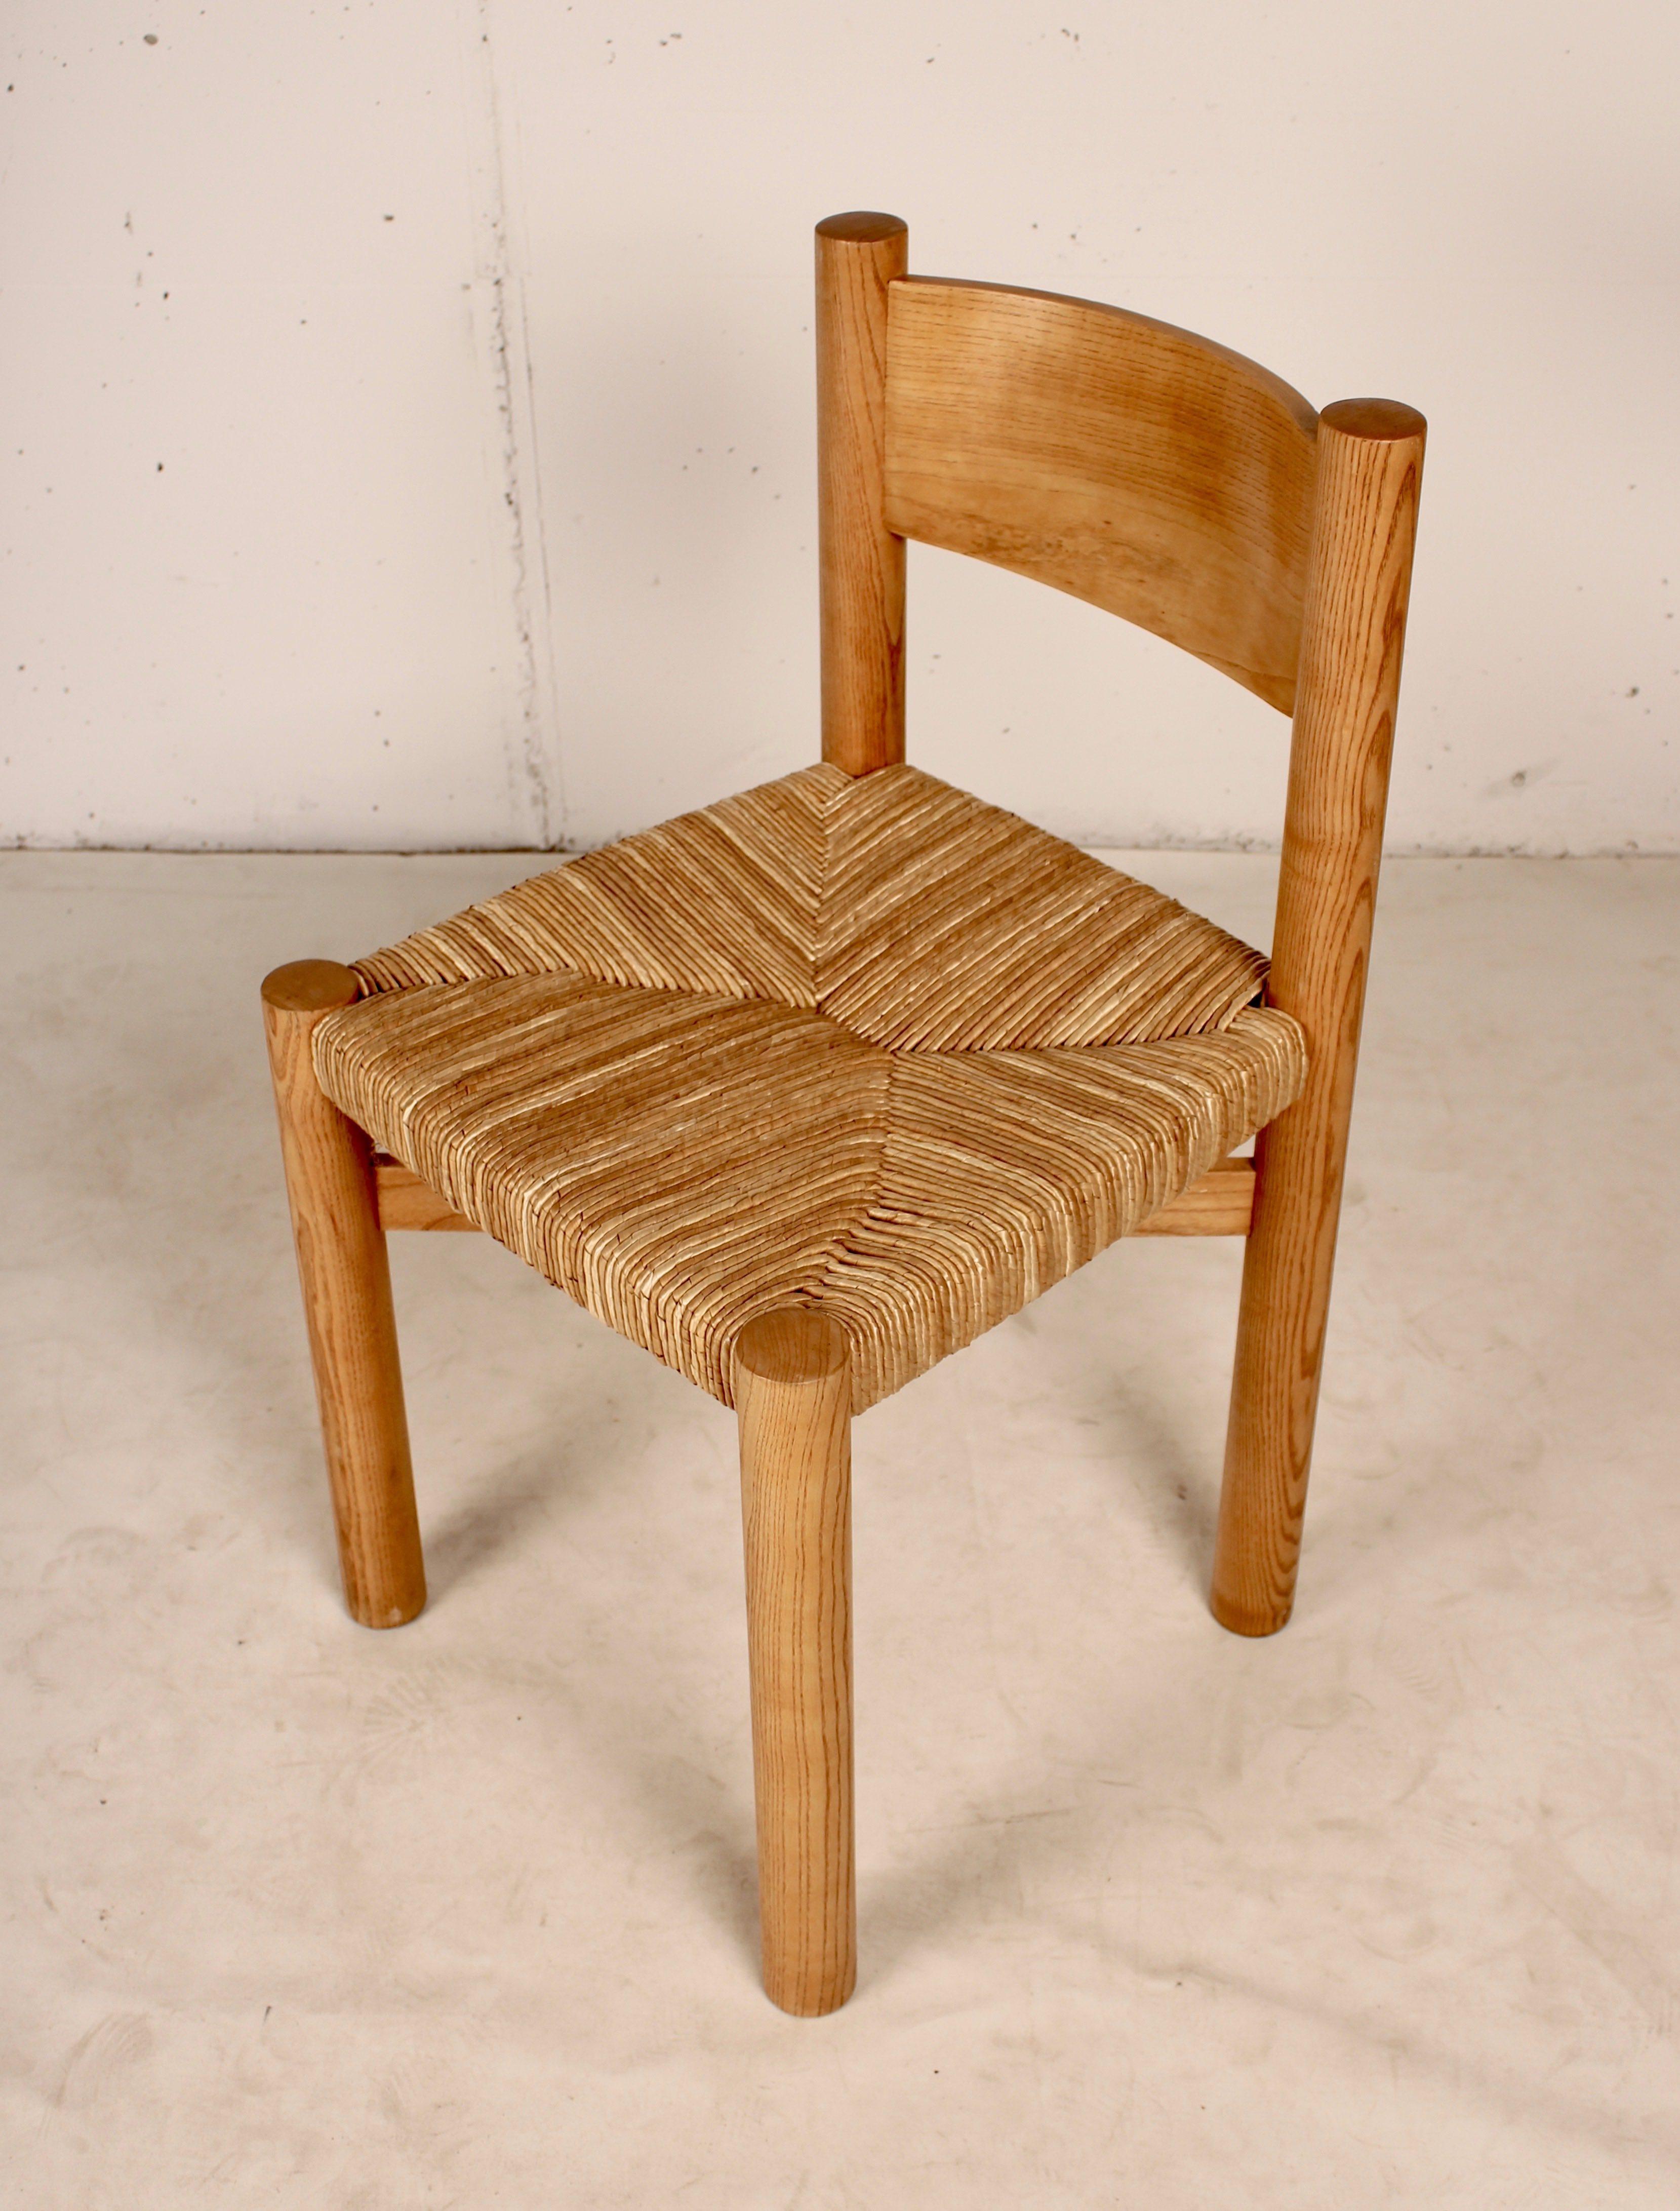 Chaise de salle à manger, modèle Meribel, conçue par Charlotte Perriand, vers 1960. Fabriqué par Steph Simon (France) socle et pieds en hêtre, et assise en paille d'origine, dossier incurvé, pieds en rondins reliés par une entretoise en X sous